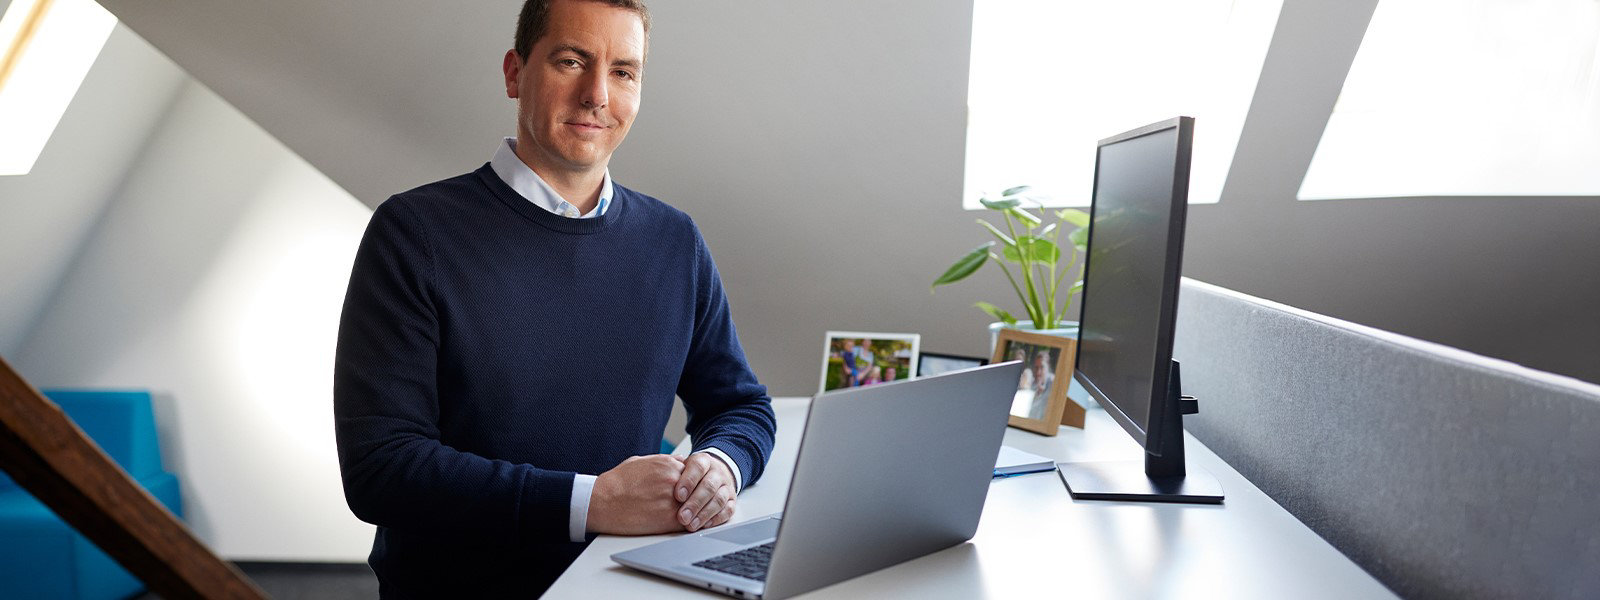 Ein Mann steht an einem Schreibtisch, auf dem ein geöffnetes Windows Laptop-Gerät steht, an dessen Seite sich ein Monitor befindet